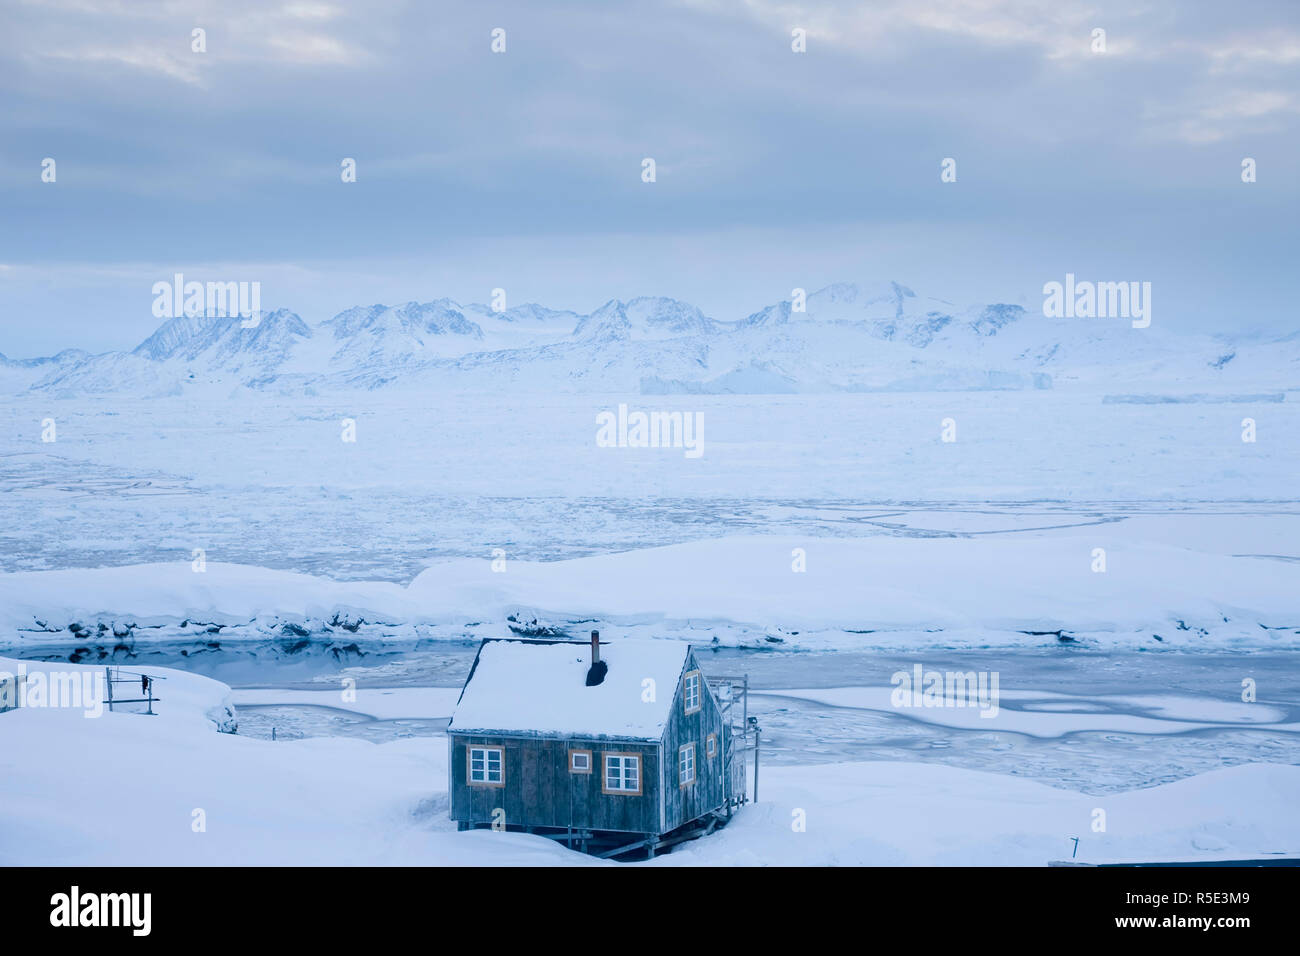 House in snow, Tiniteqilaq, E. Greenland Stock Photo